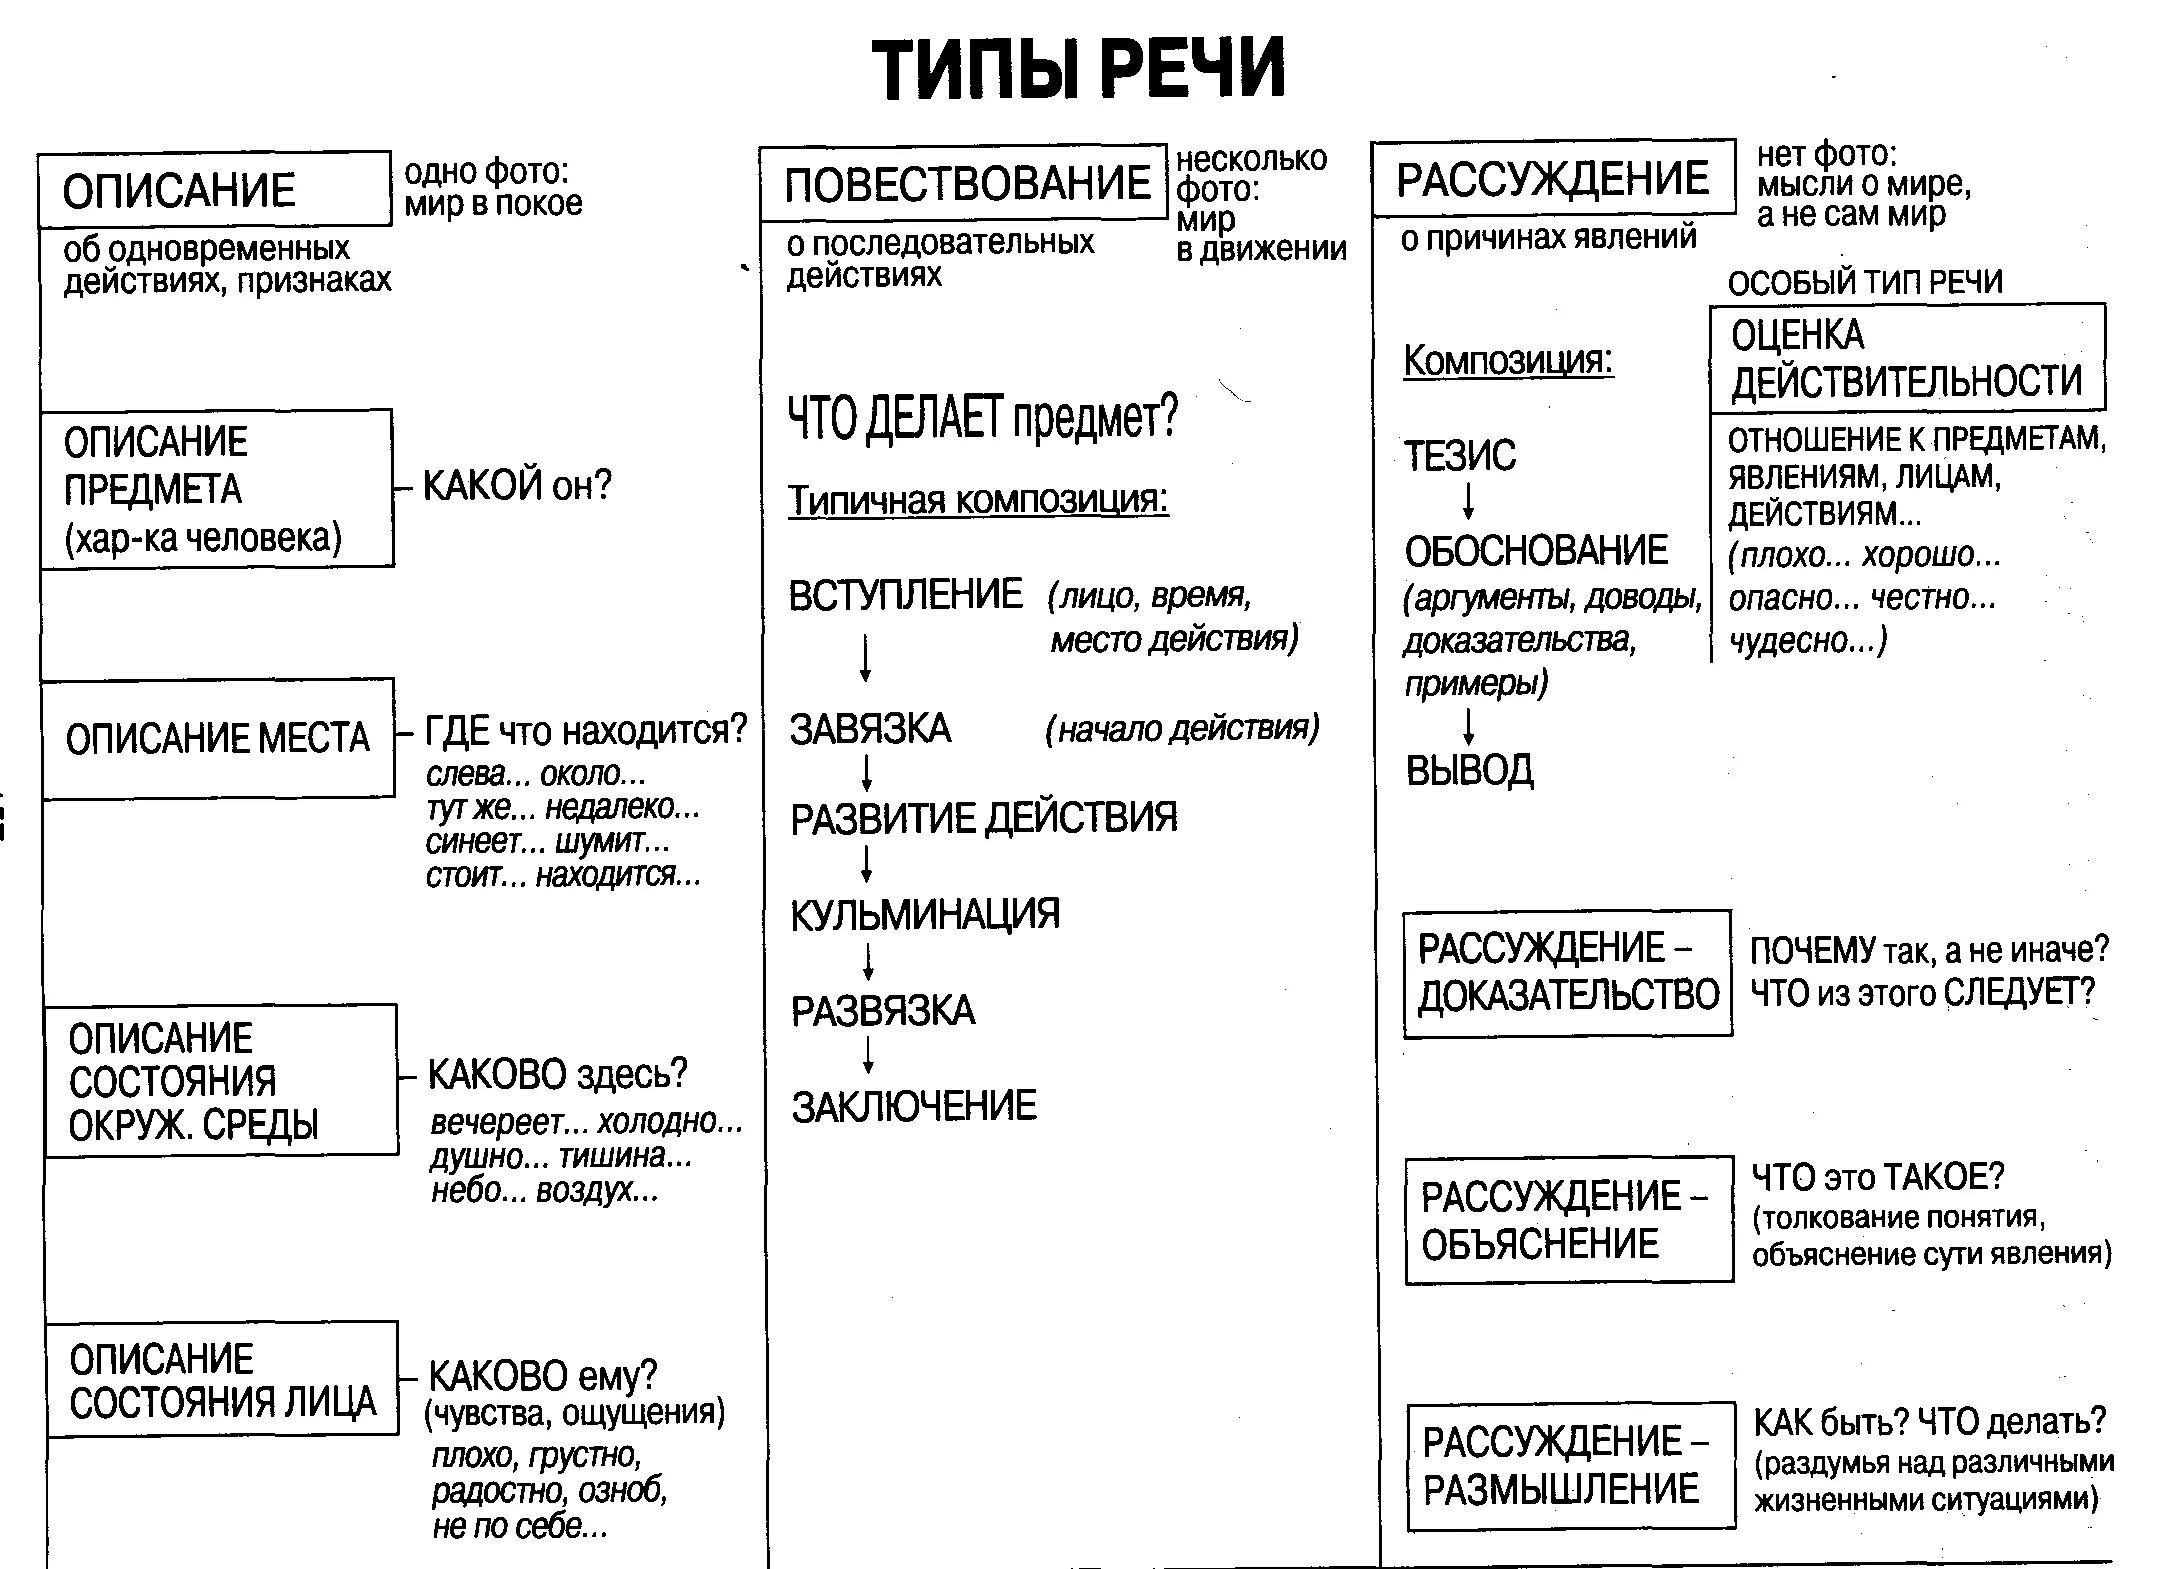 Какой тип речи в предложениях 11 14. Схема типов речи в русском языке. Виды и типы речи в русском языке. Типы речи в русском языке 5. Как определить Тип речи 5 класс.